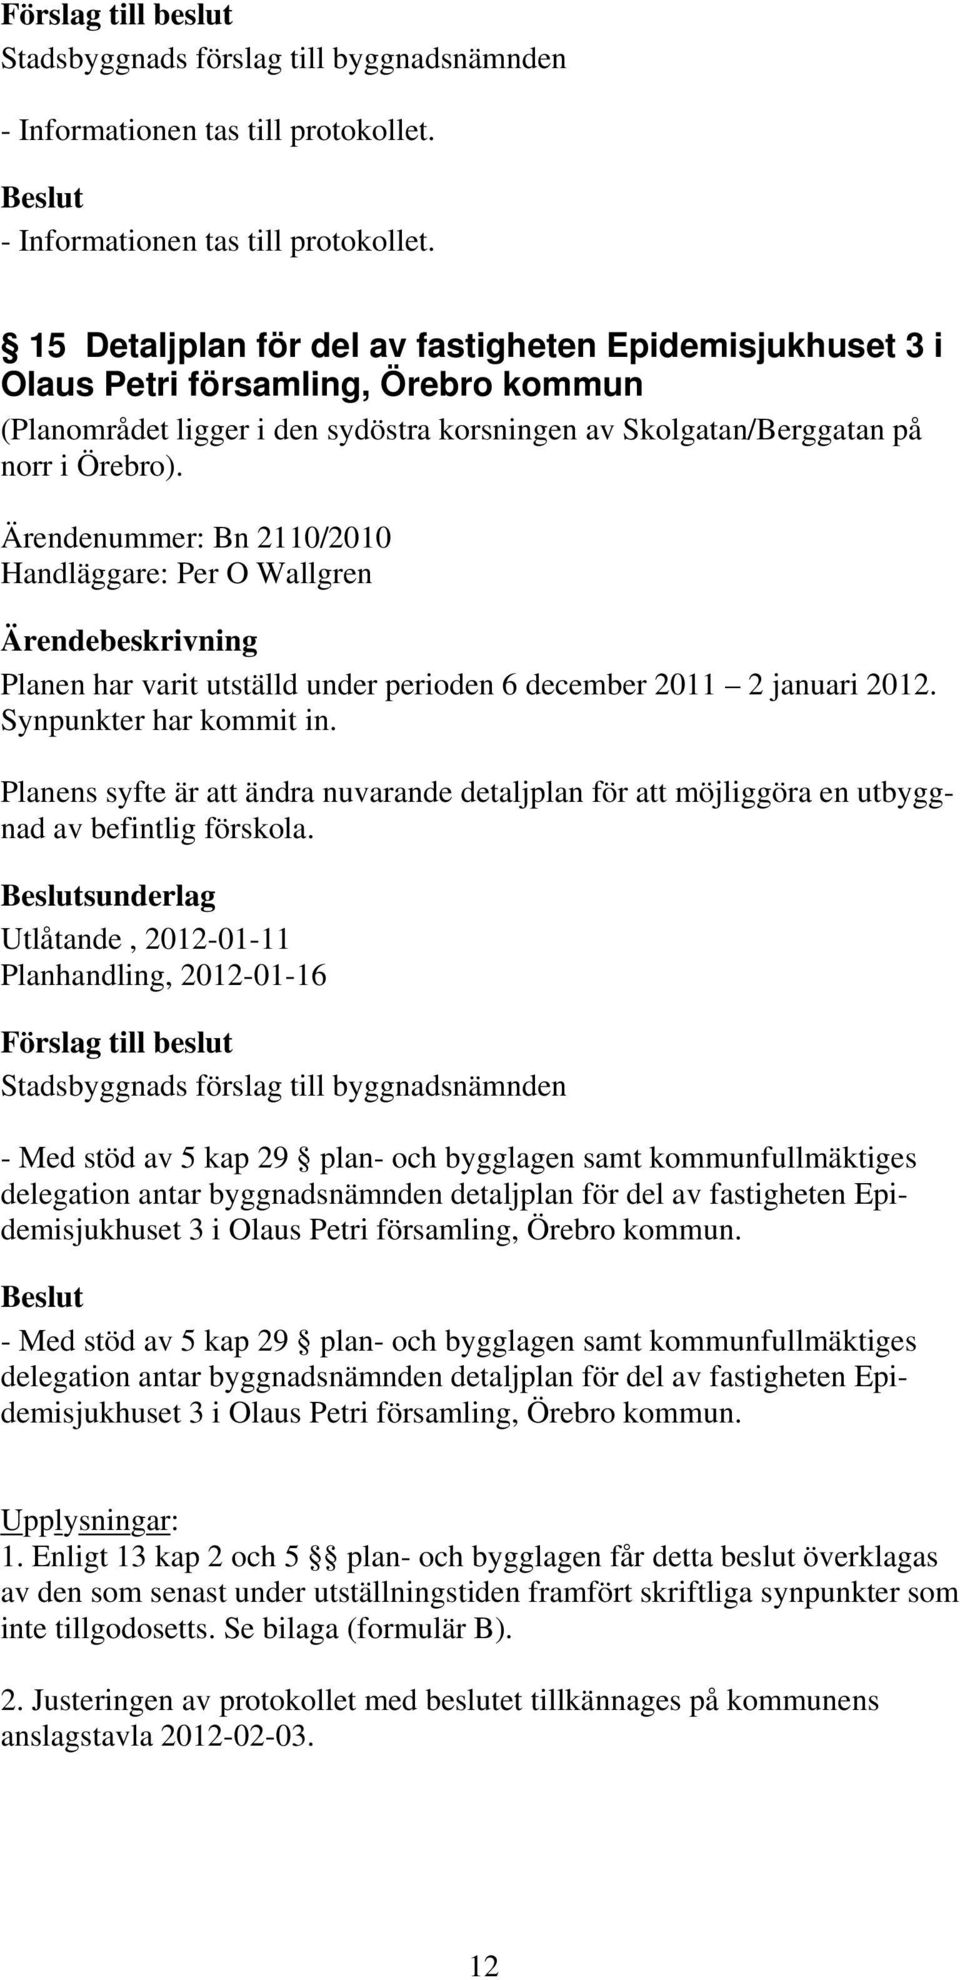 Ärendenummer: Bn 2110/2010 Handläggare: Per O Wallgren Planen har varit utställd under perioden 6 december 2011 2 januari 2012. Synpunkter har kommit in.